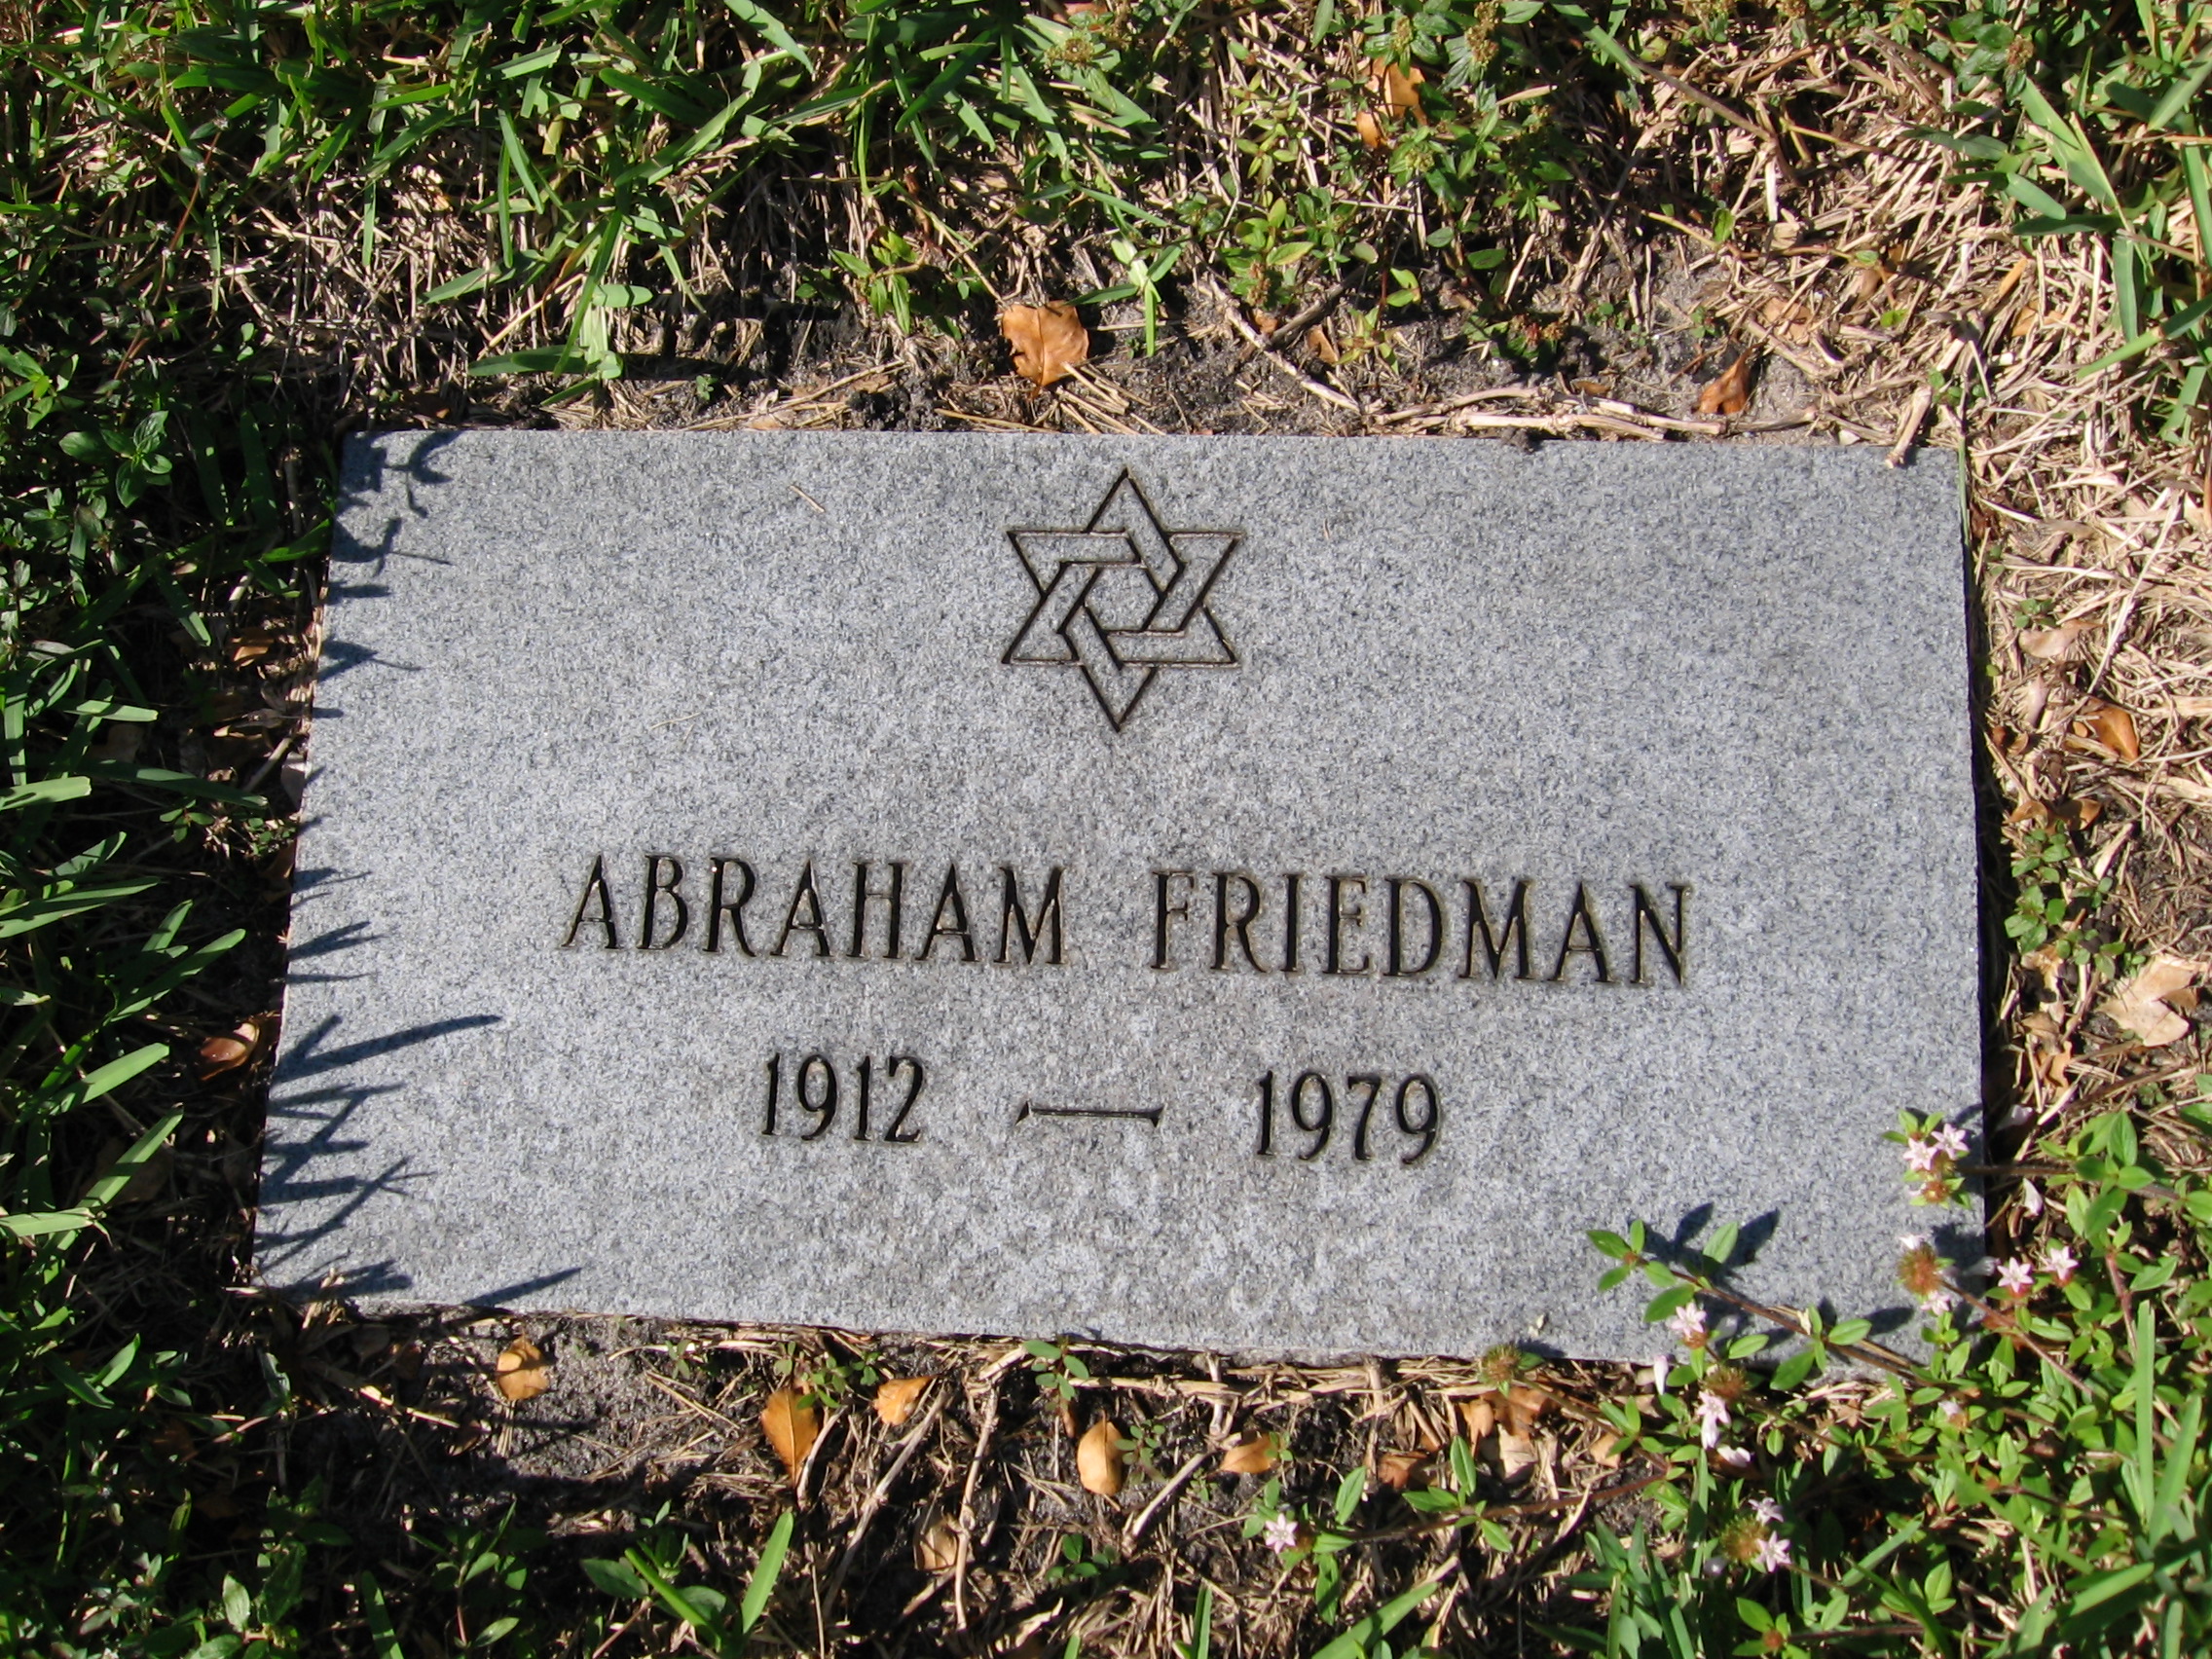 Abraham Friedman